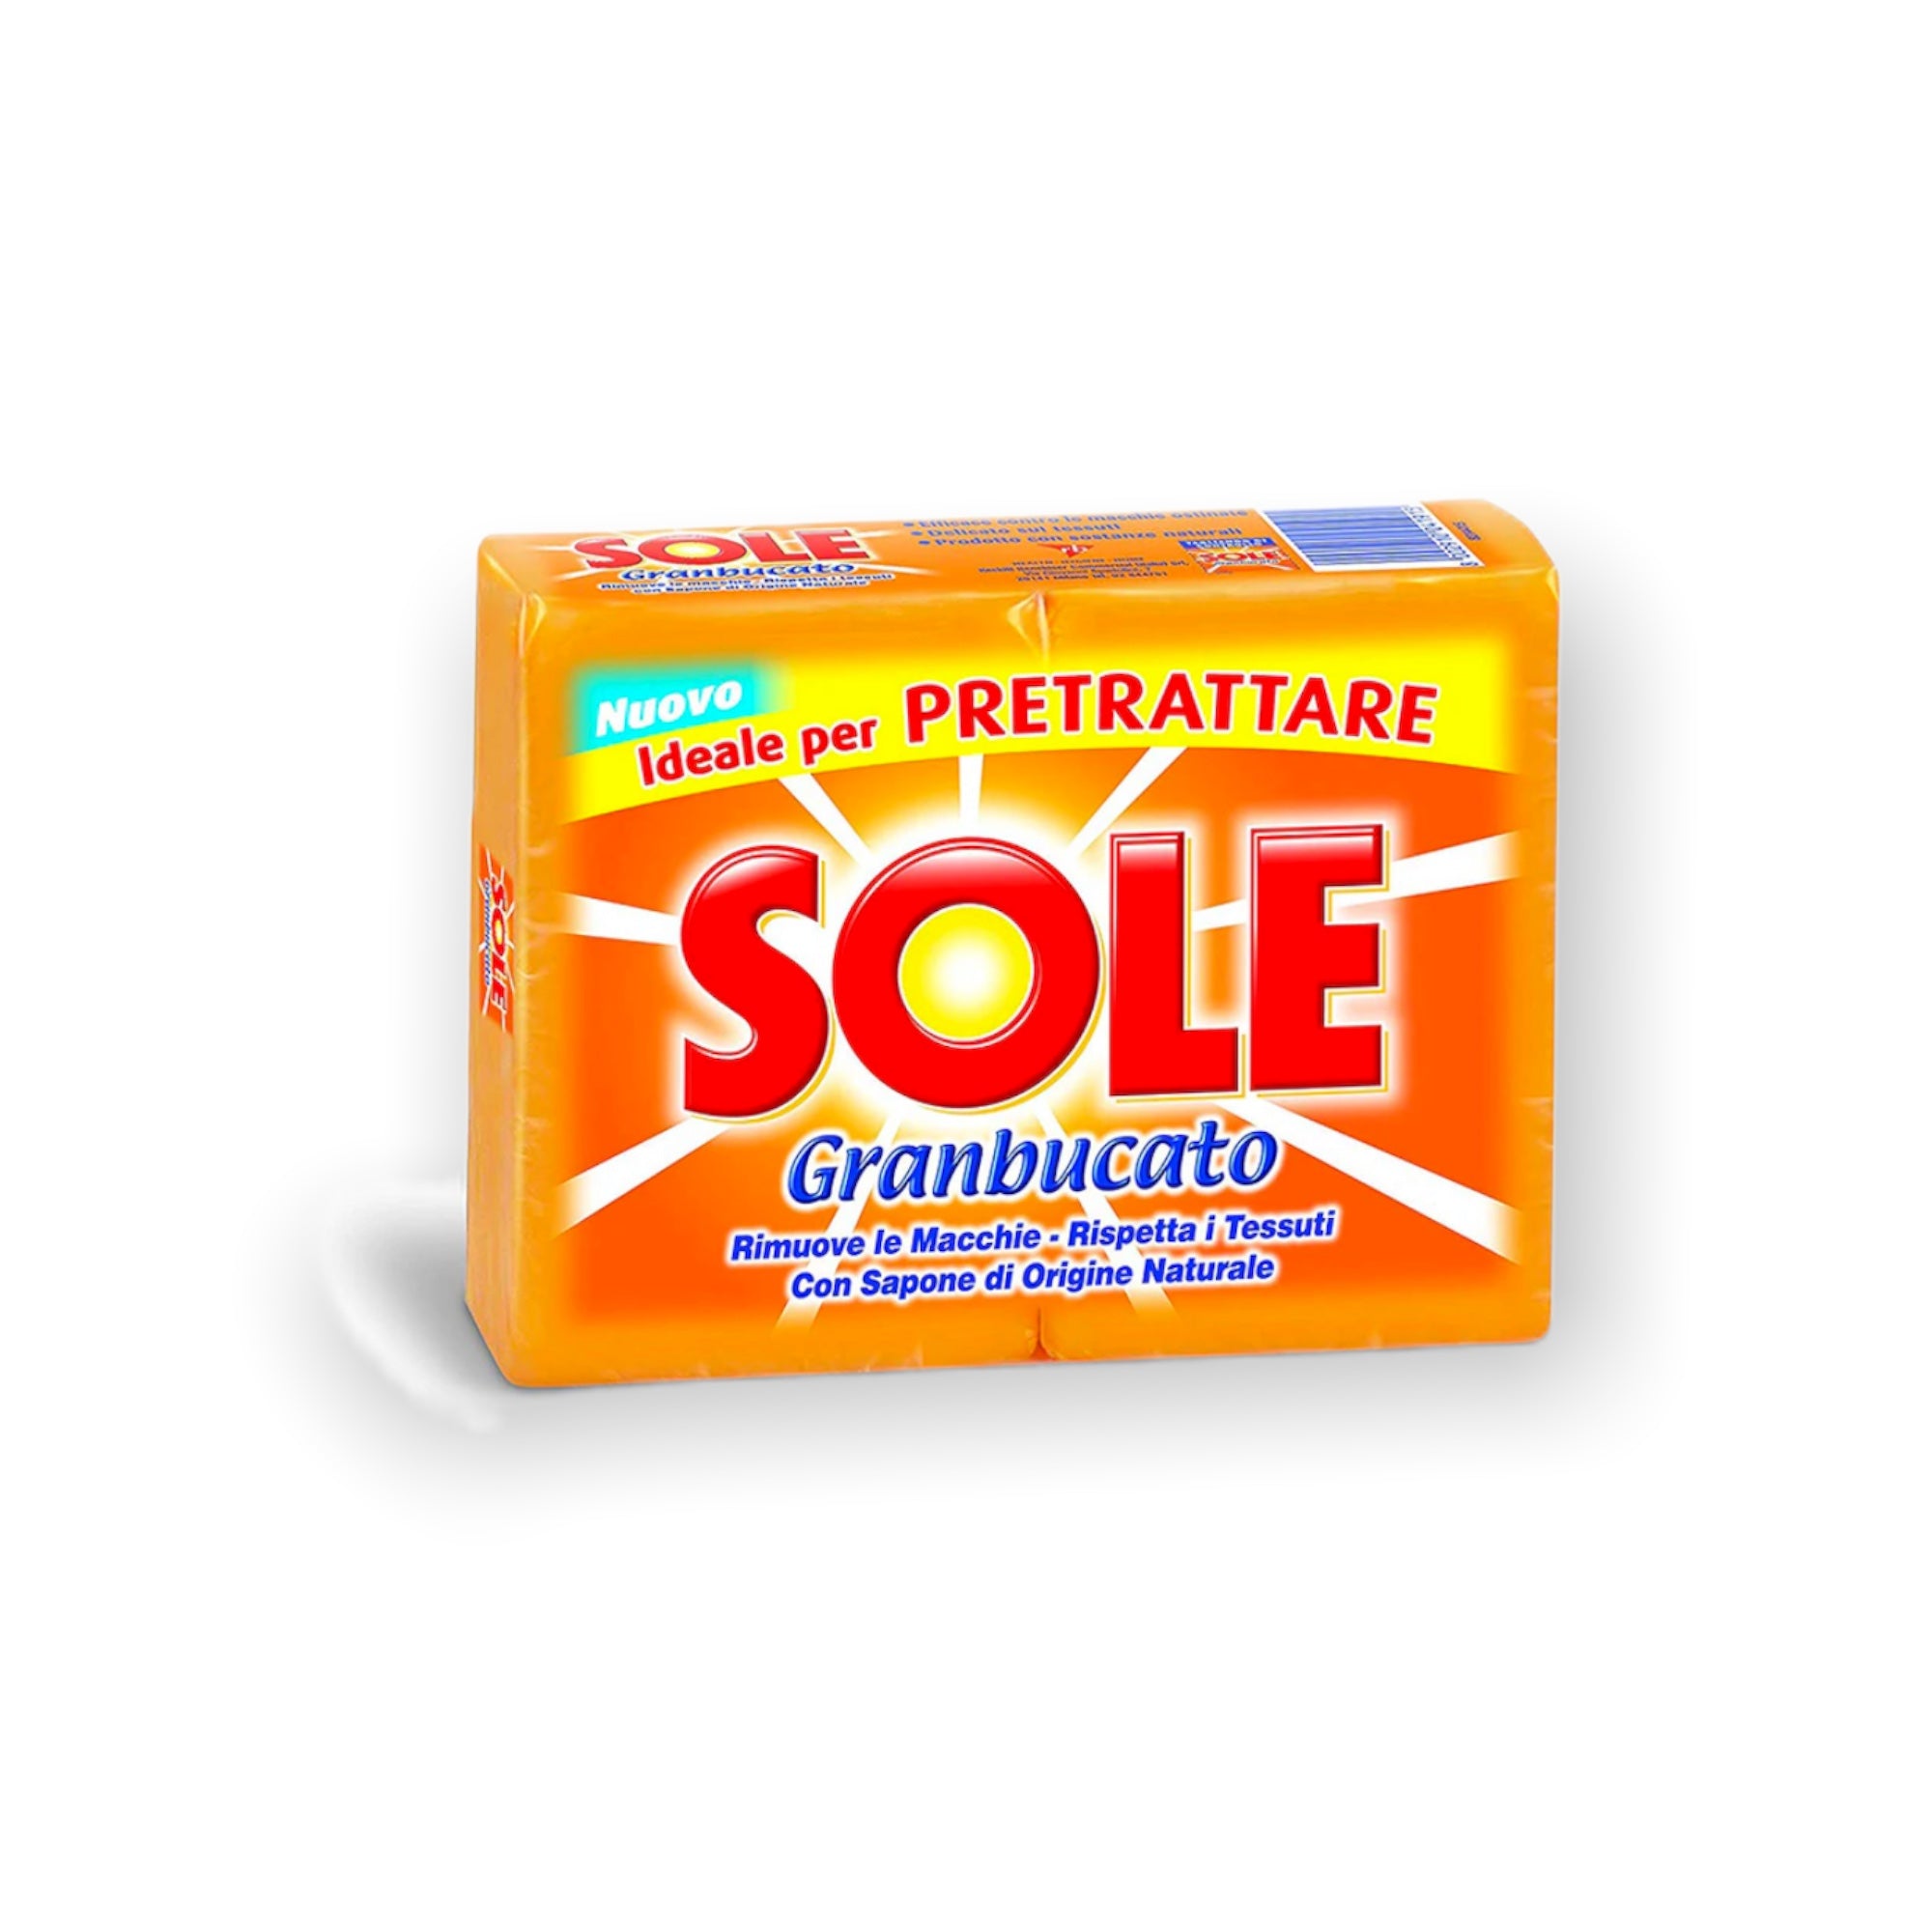 Sole Granbucato" Laundry Soap (2X250g) Soaps